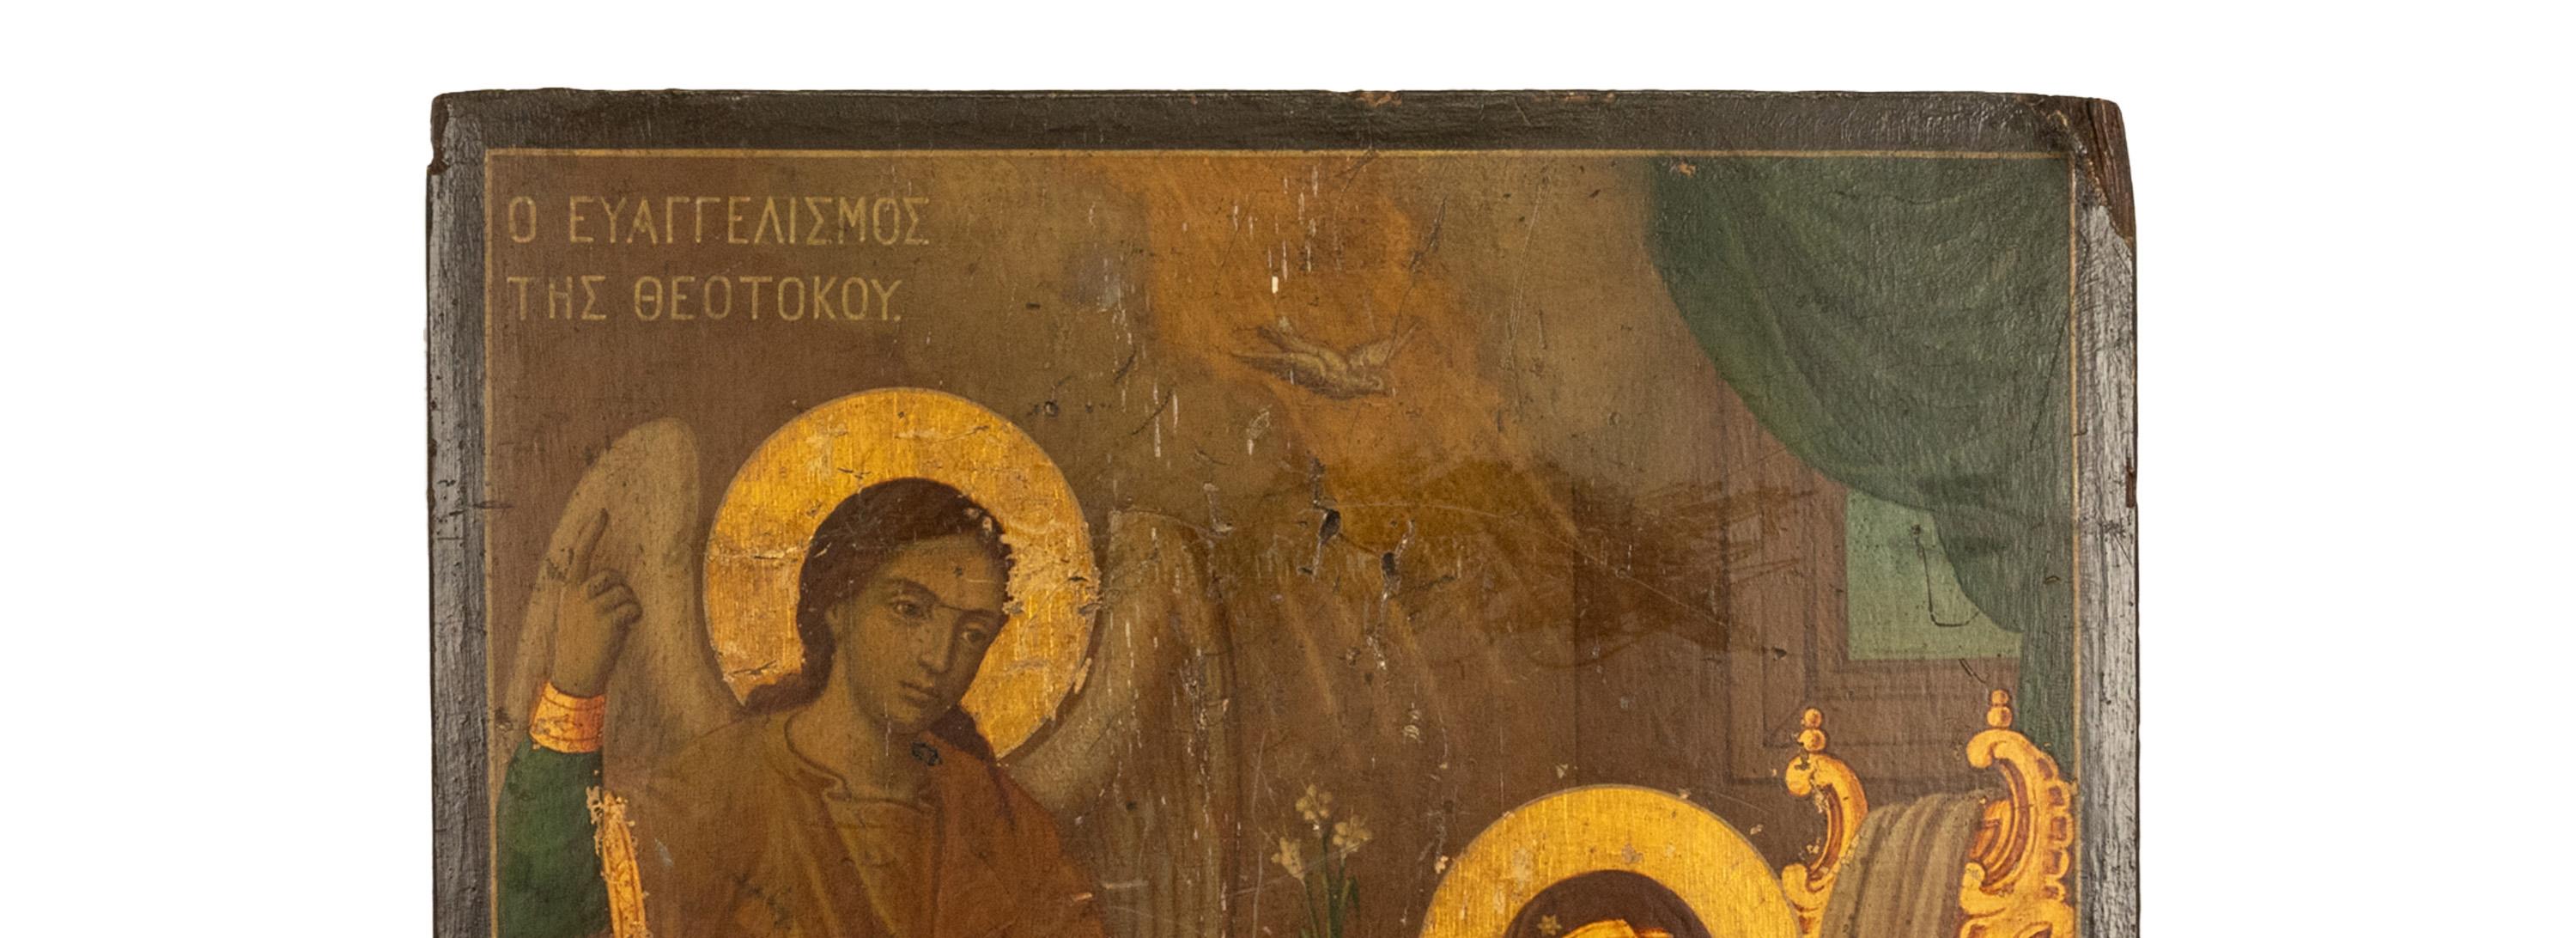 Antike griechisch-orthodoxe Ikone aus dem 18. Jahrhundert, Eitempera und Blattgold auf Holz, um 1750.
Die Ikone stellt die Verkündigung der Jungfrau Maria dar, links ist der Engel Gabriel zu sehen, der der Jungfrau eine Blume überreicht und in den